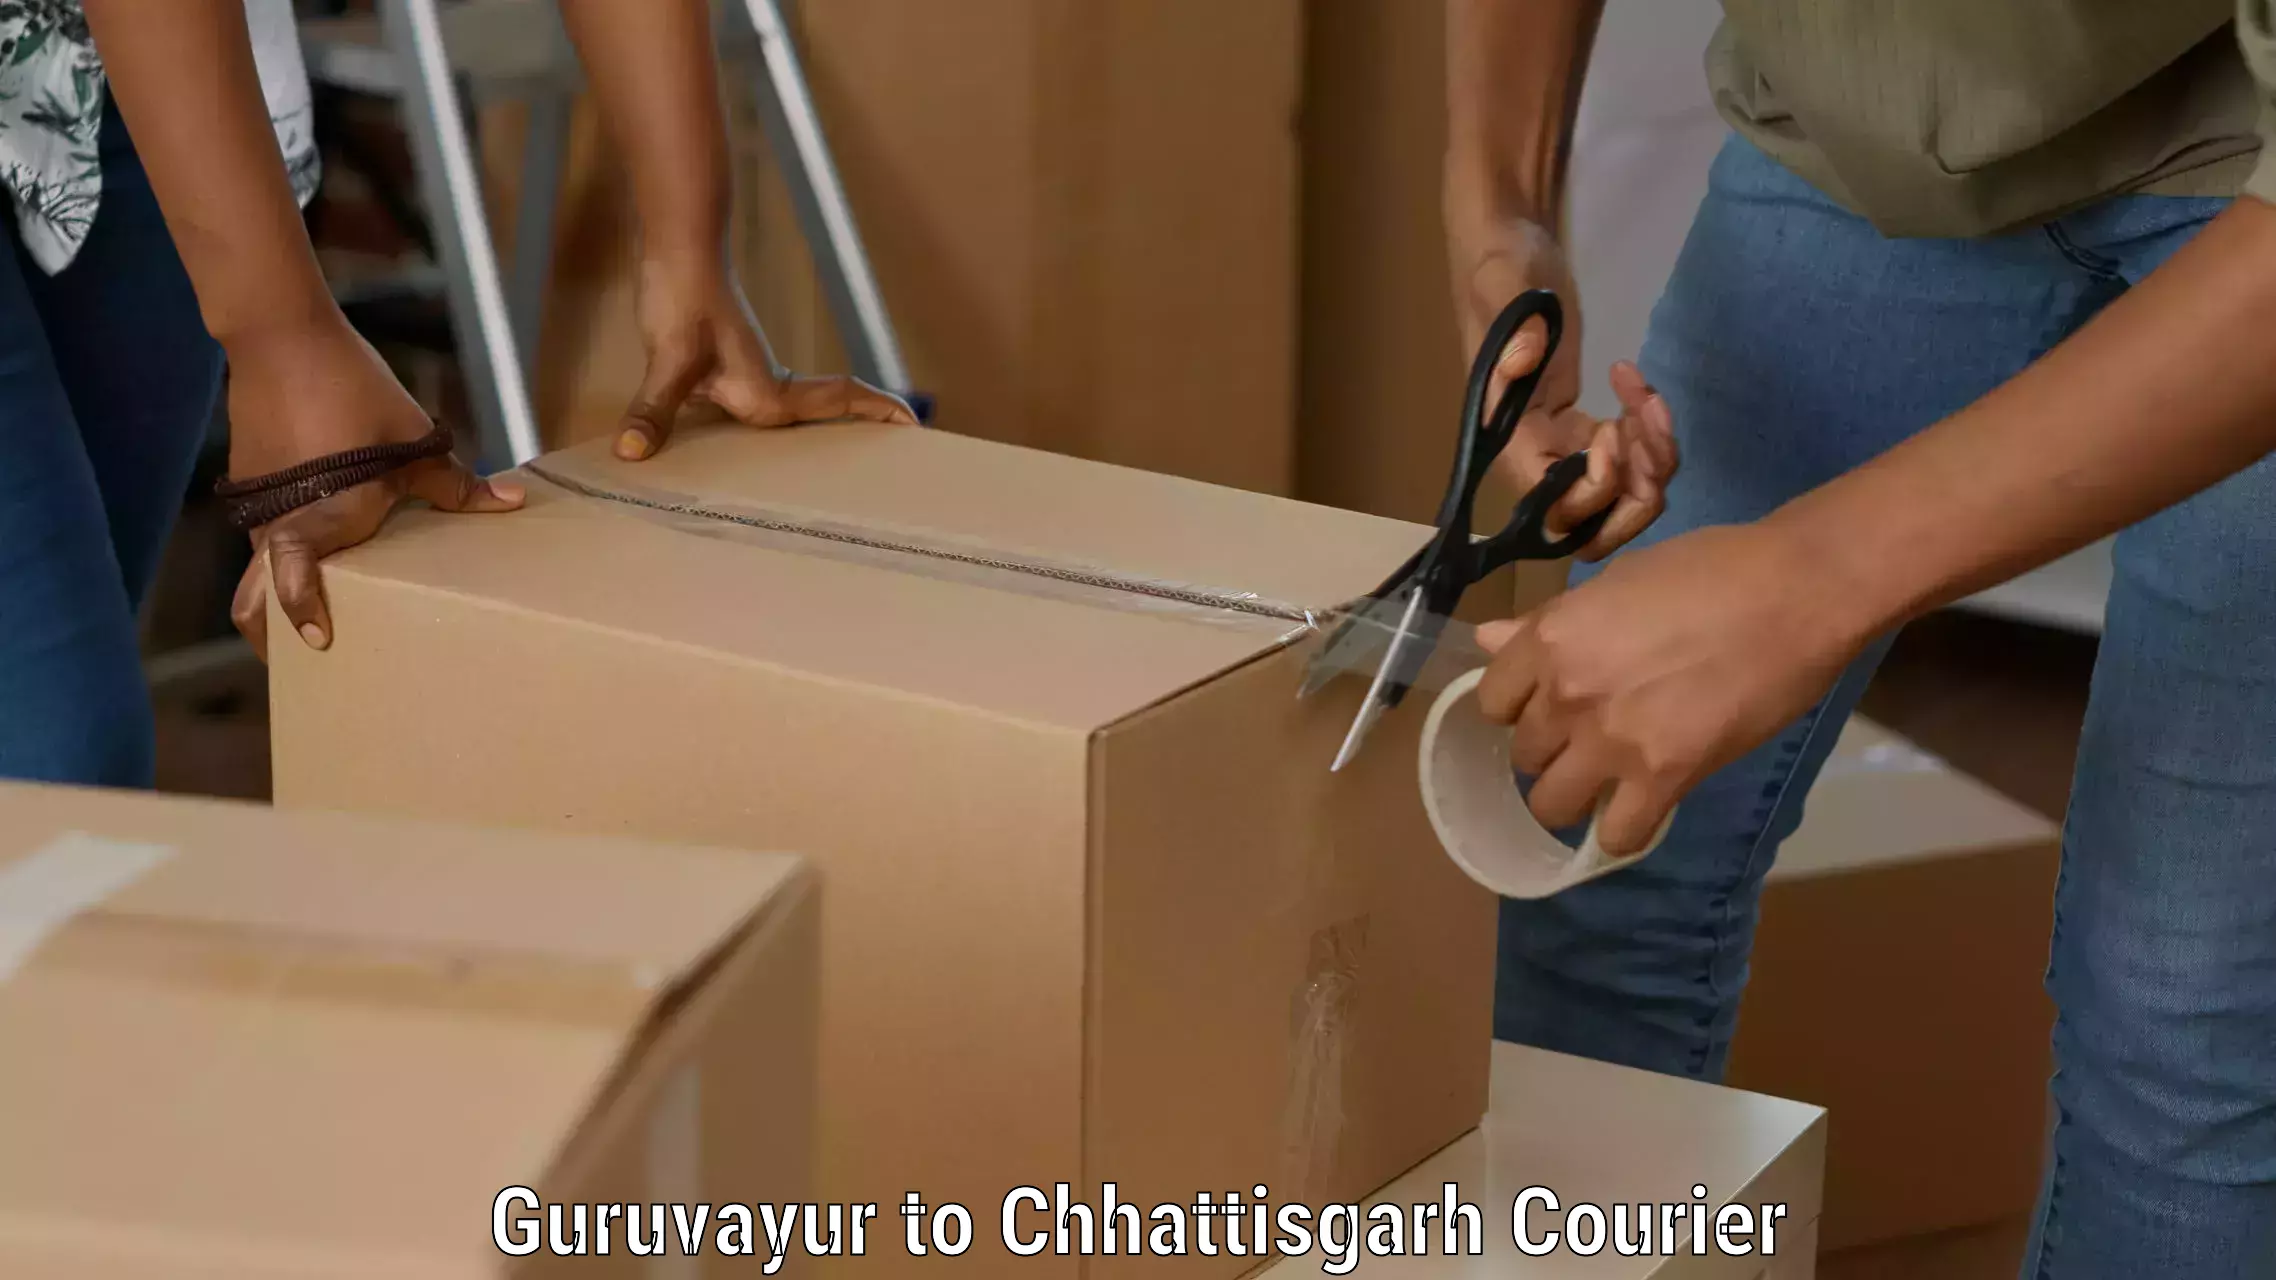 Reliable package handling in Guruvayur to Mahasamund